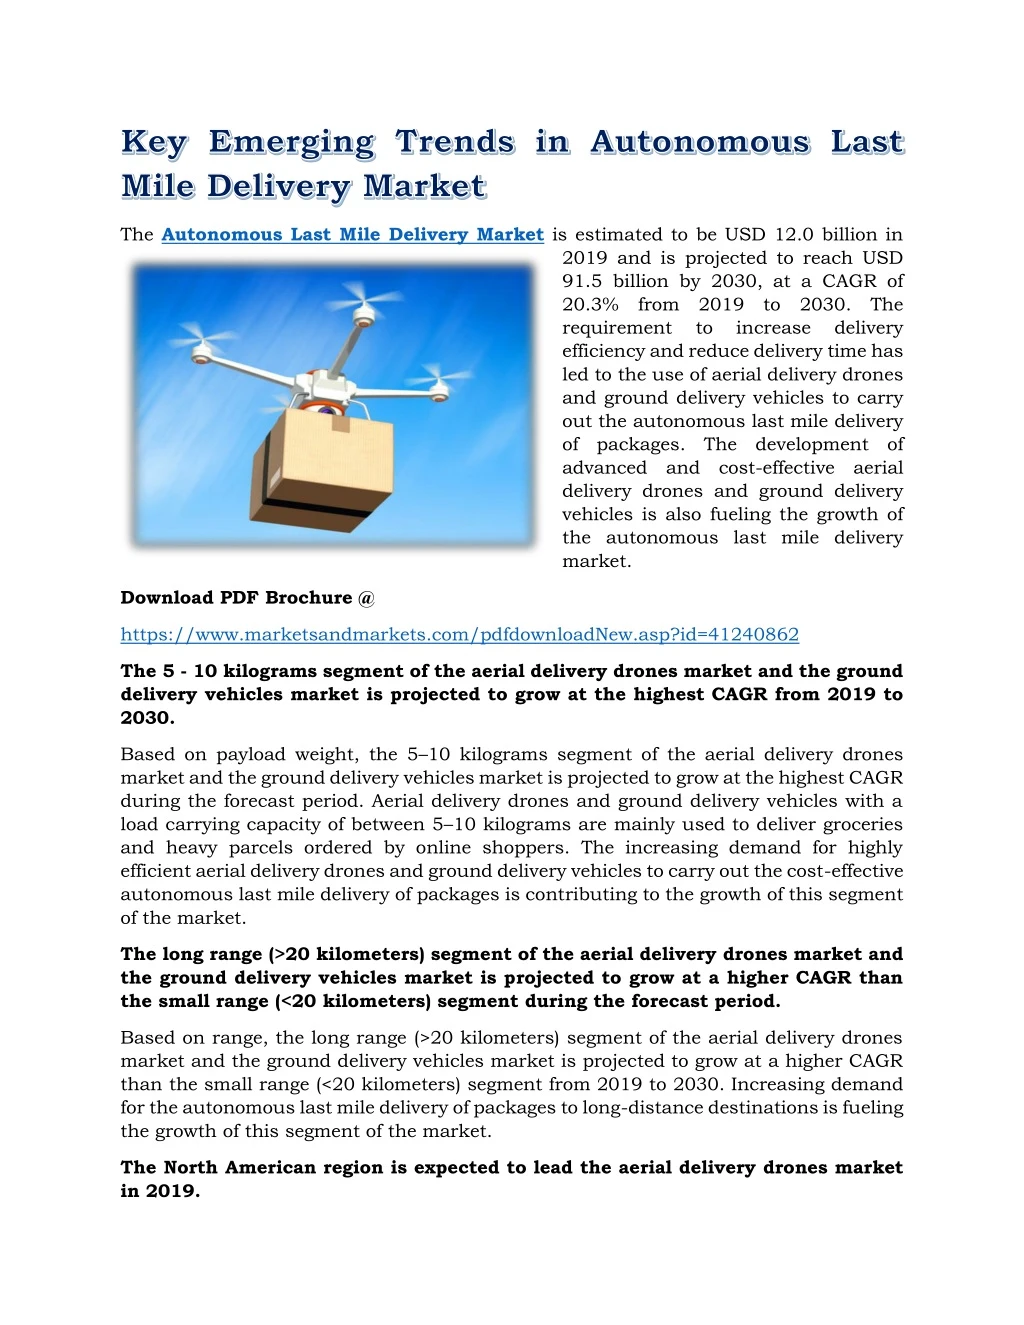 the autonomous last mile delivery market